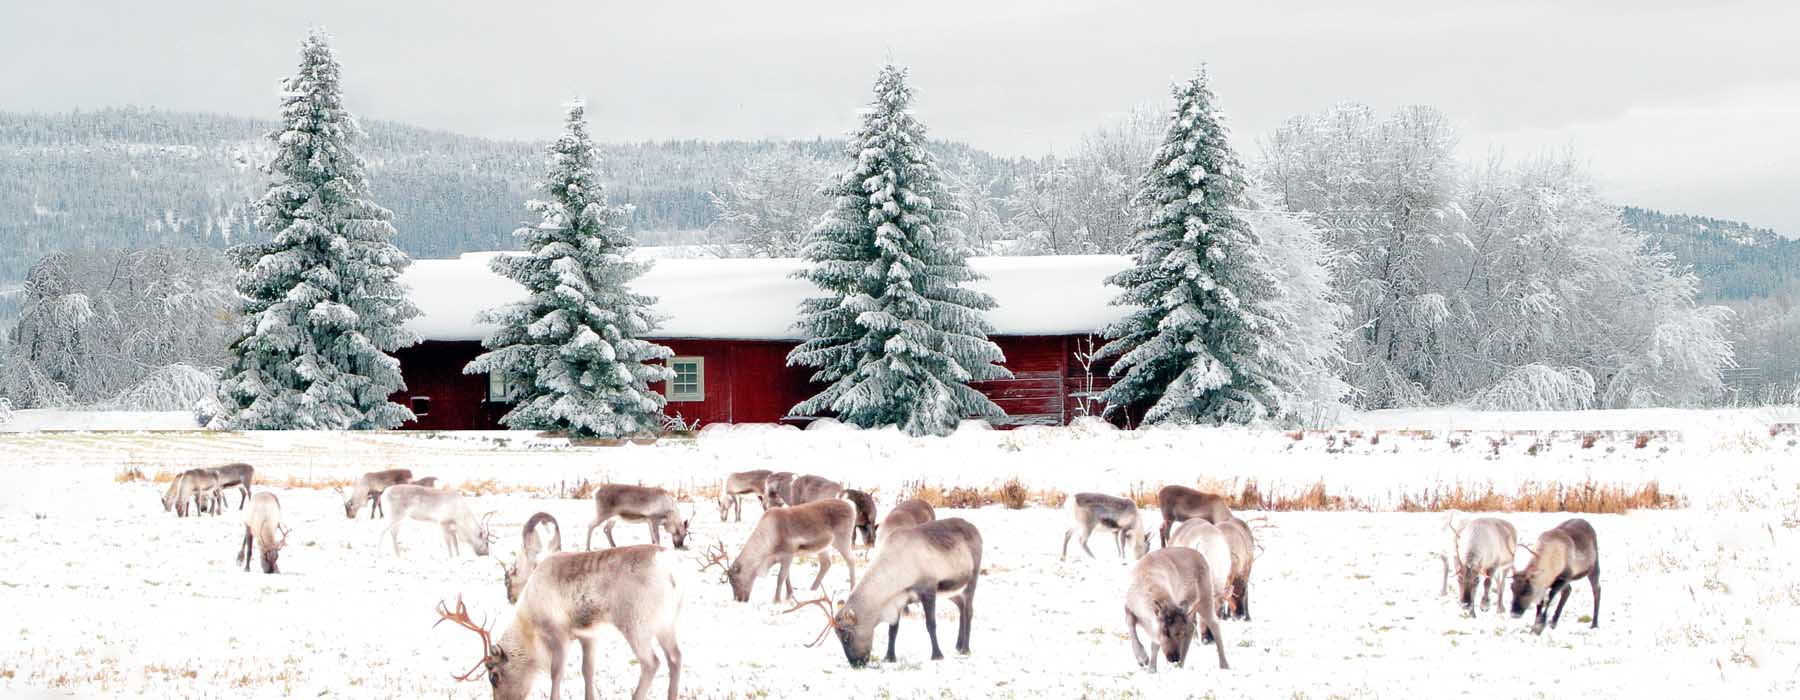 All our Finland<br class="hidden-md hidden-lg" /> Snow Holidays